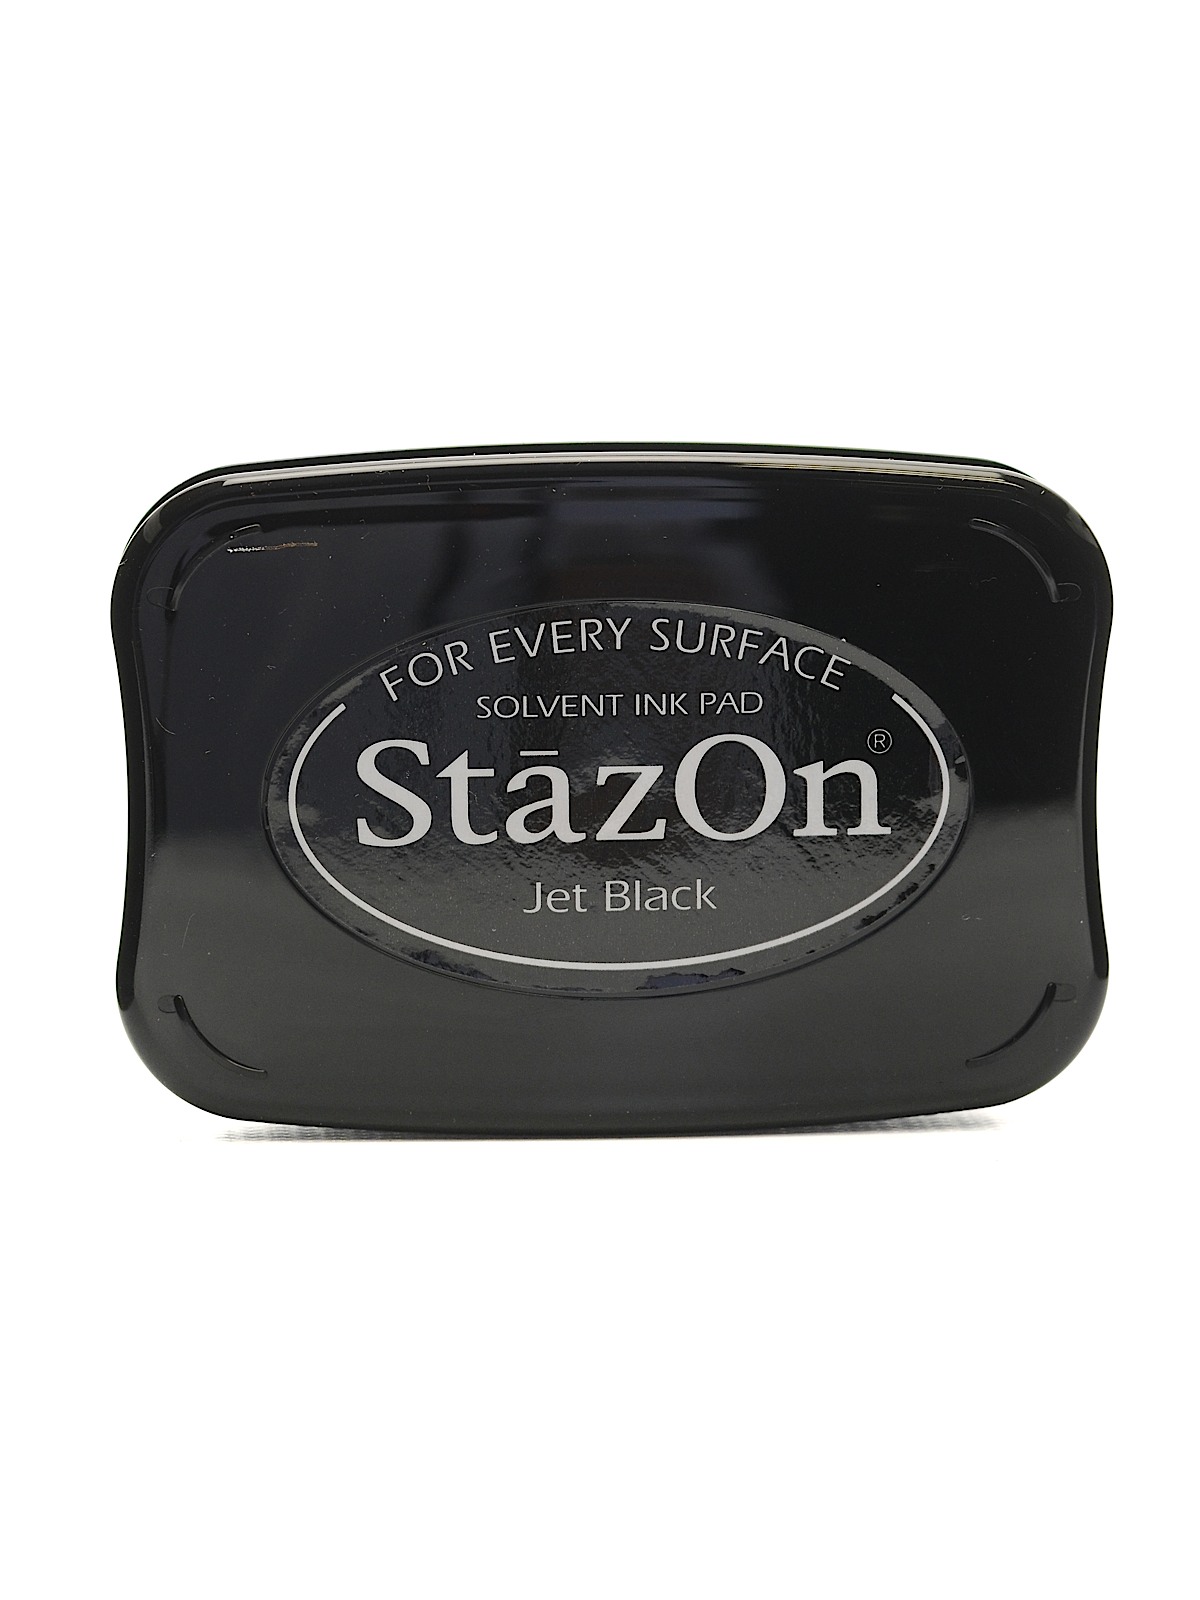 Stazon Solvent Ink Jet Black 3.75 In. X 2.625 In. Full-size Pad